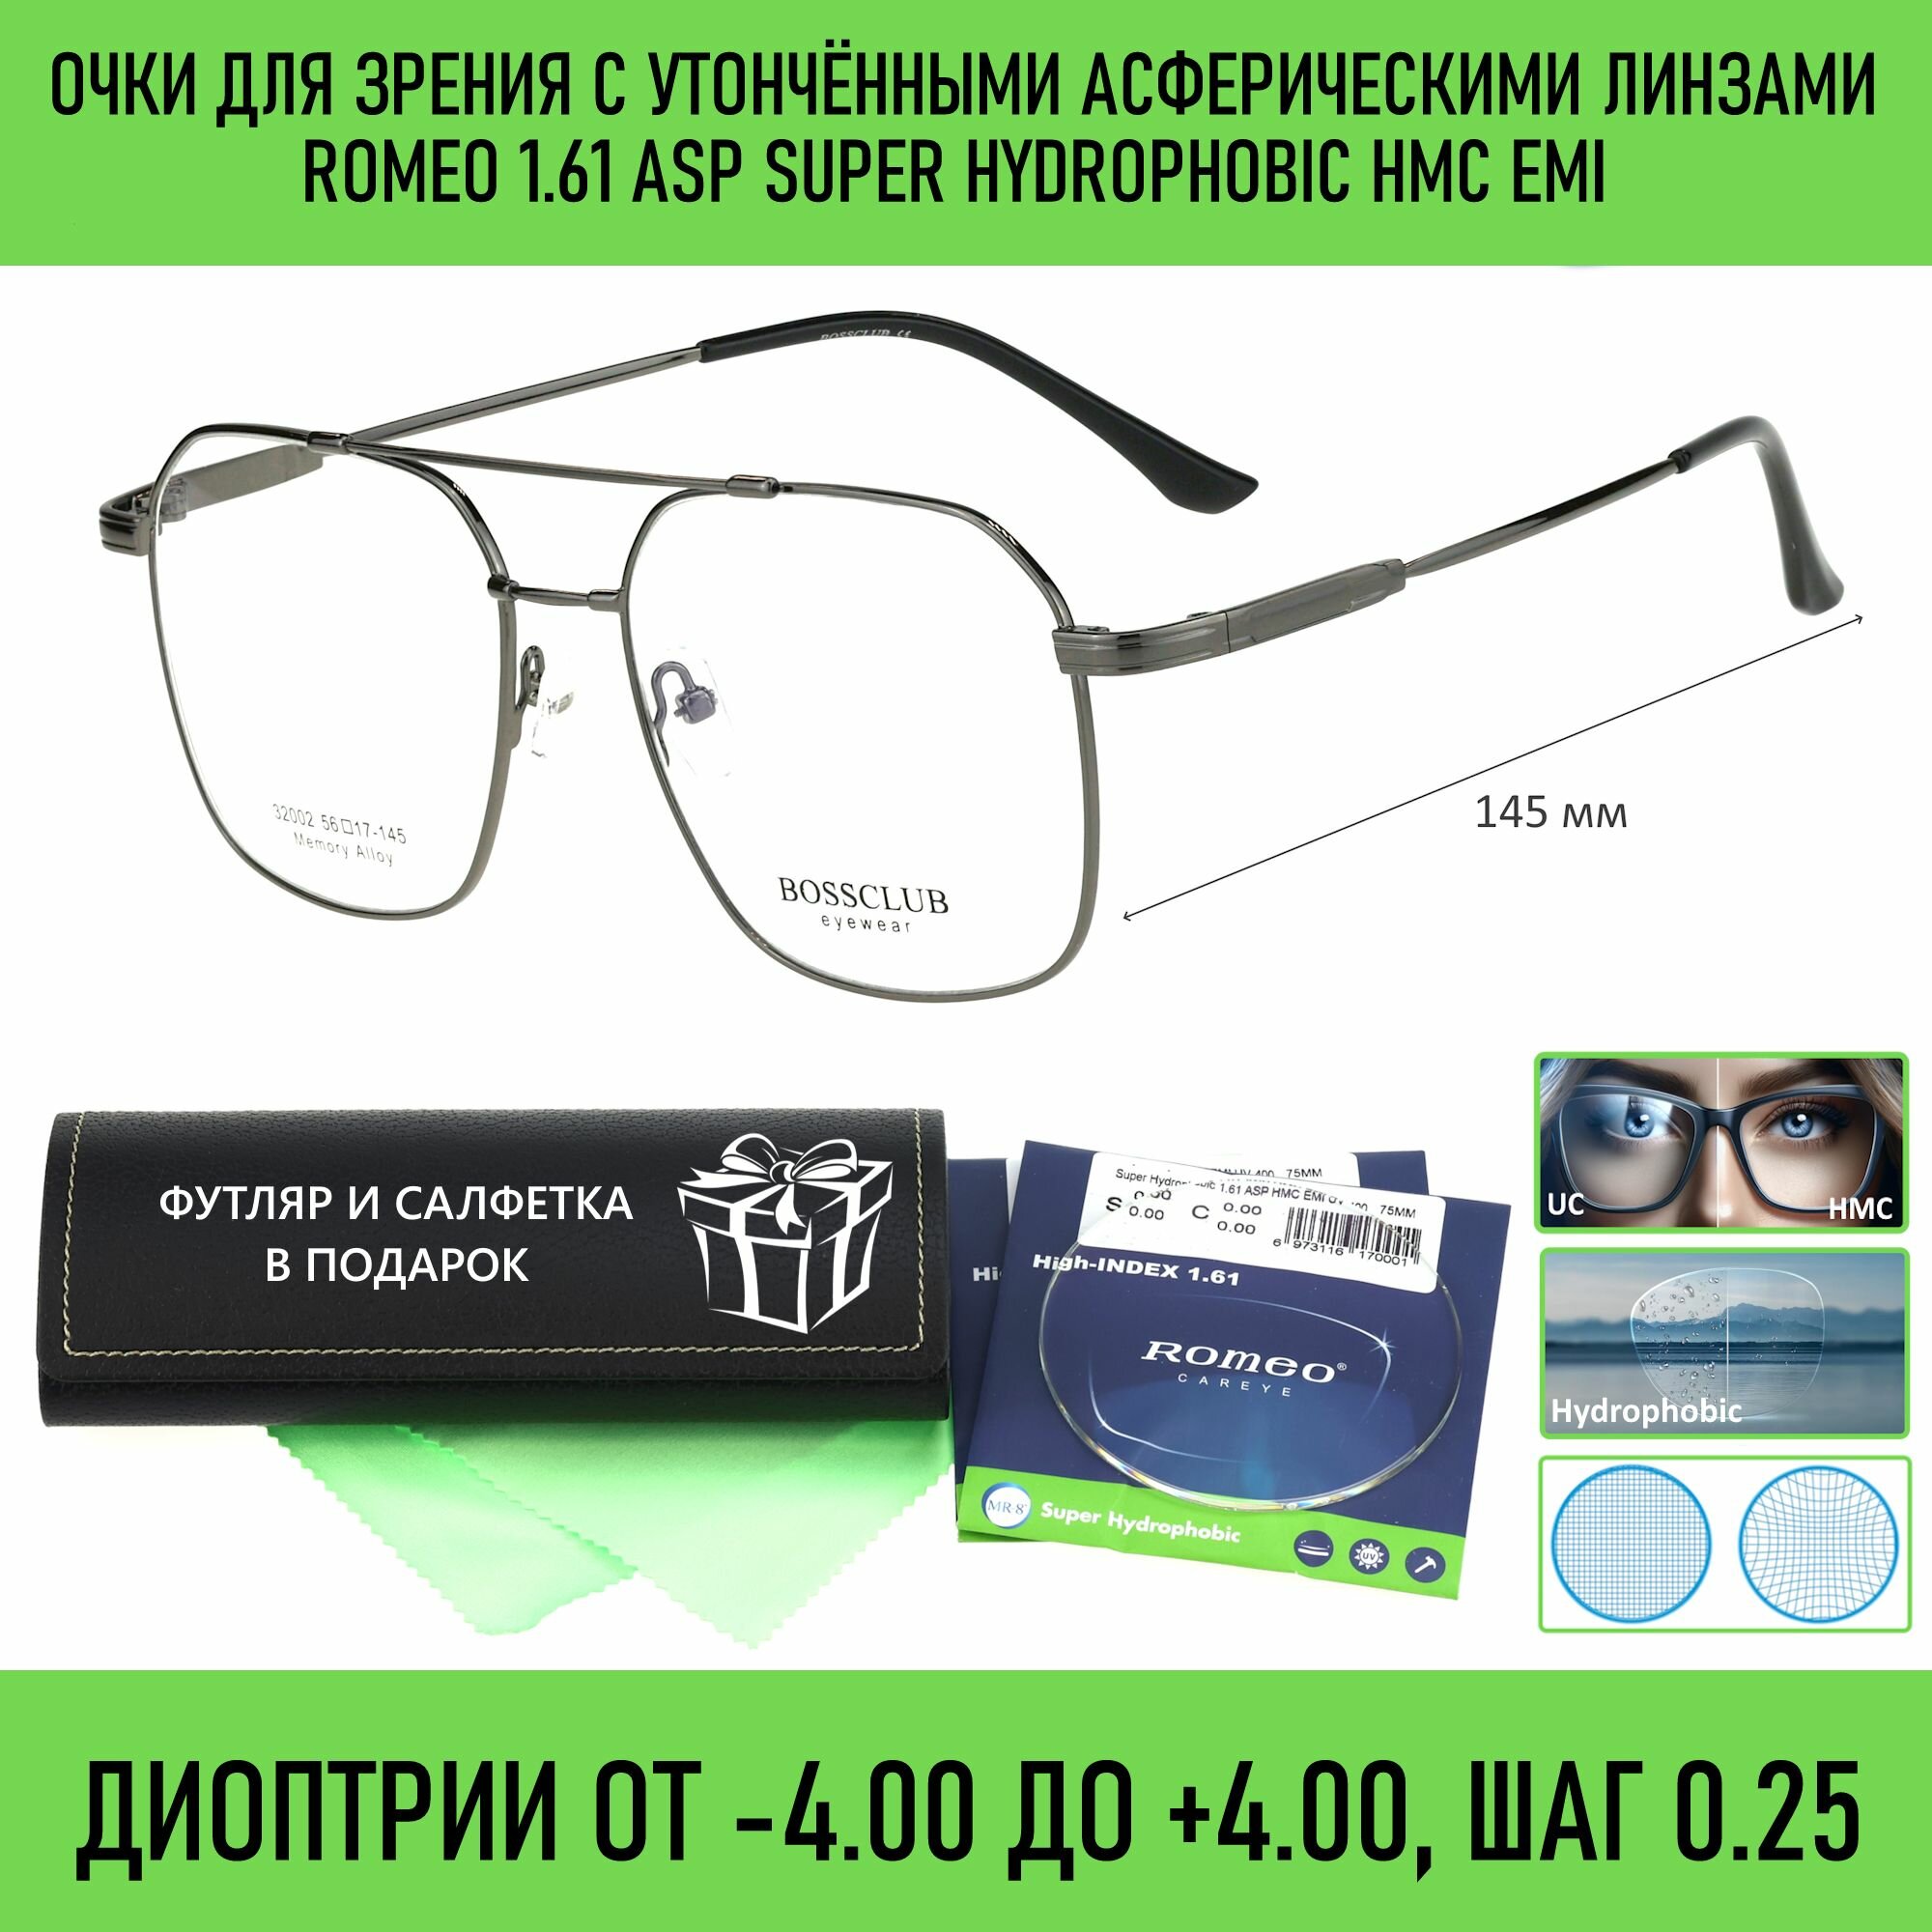 Титановые очки для чтения с футляром на магните BOSS CLUB мод. 32002 Цвет 11 с асферическими линзами ROMEO 1.61 ASP Super Hydrophobic HMC/EMI +1.50 РЦ 68-70